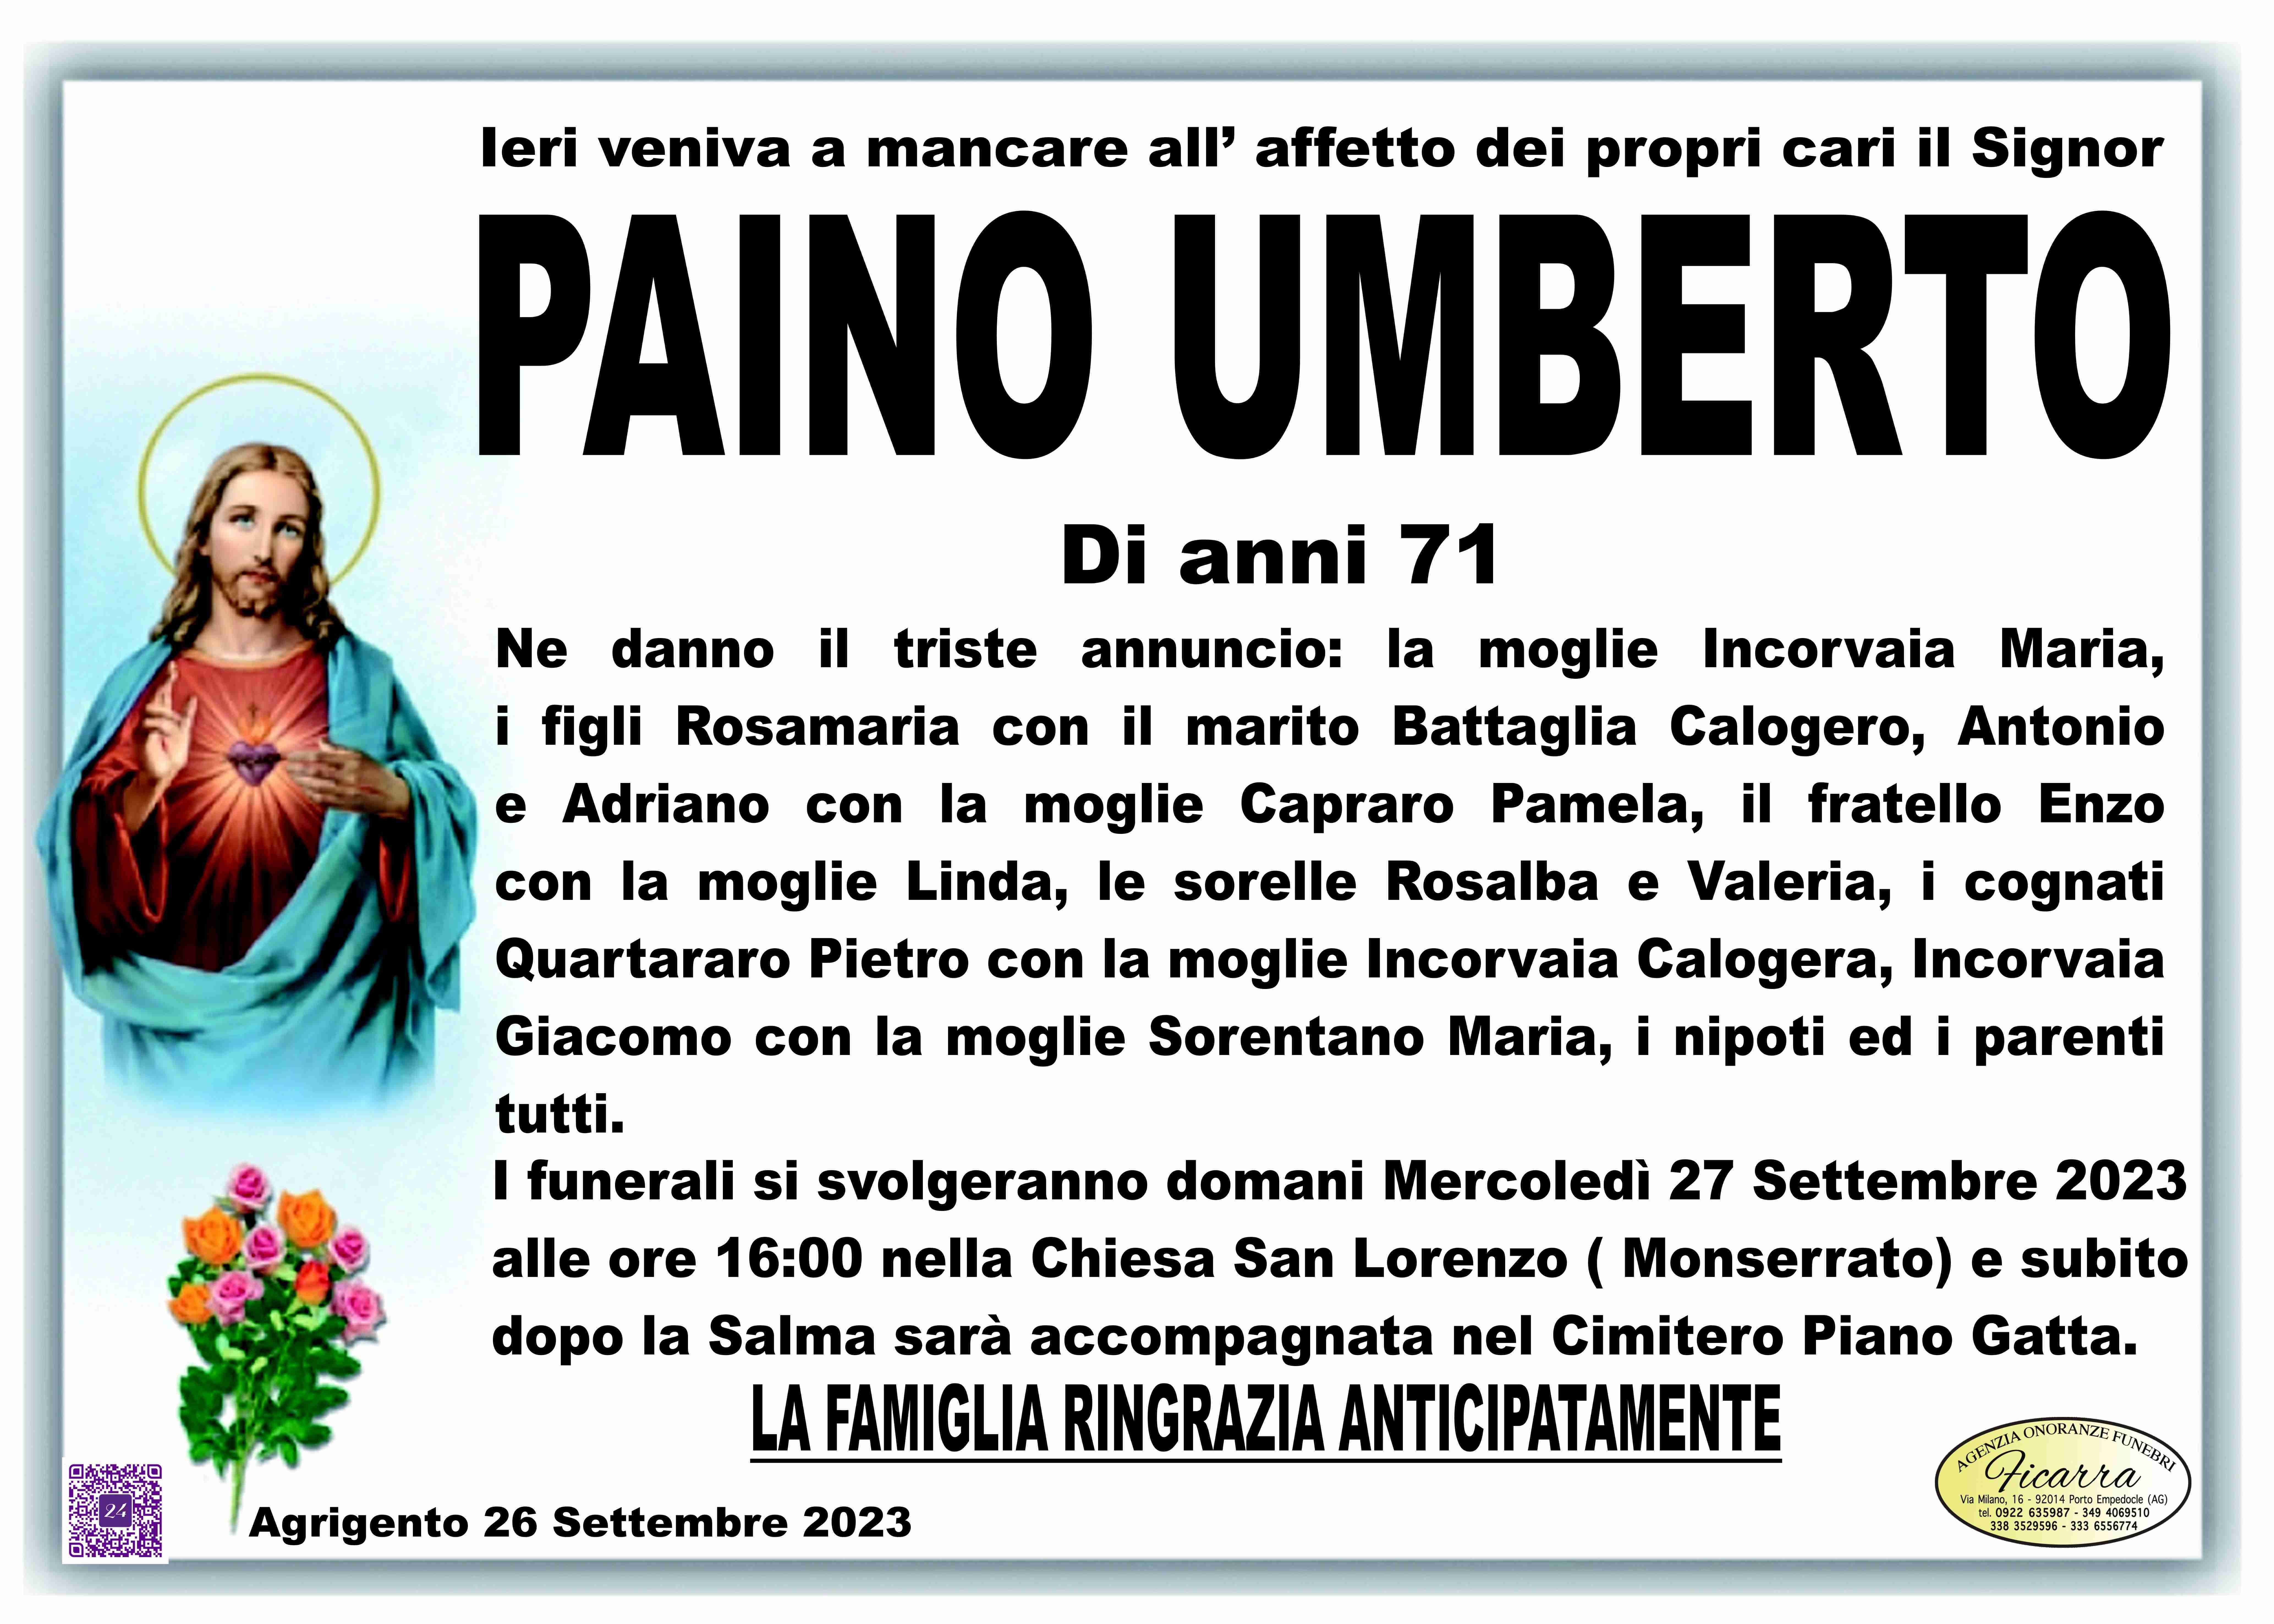 Umberto Paino